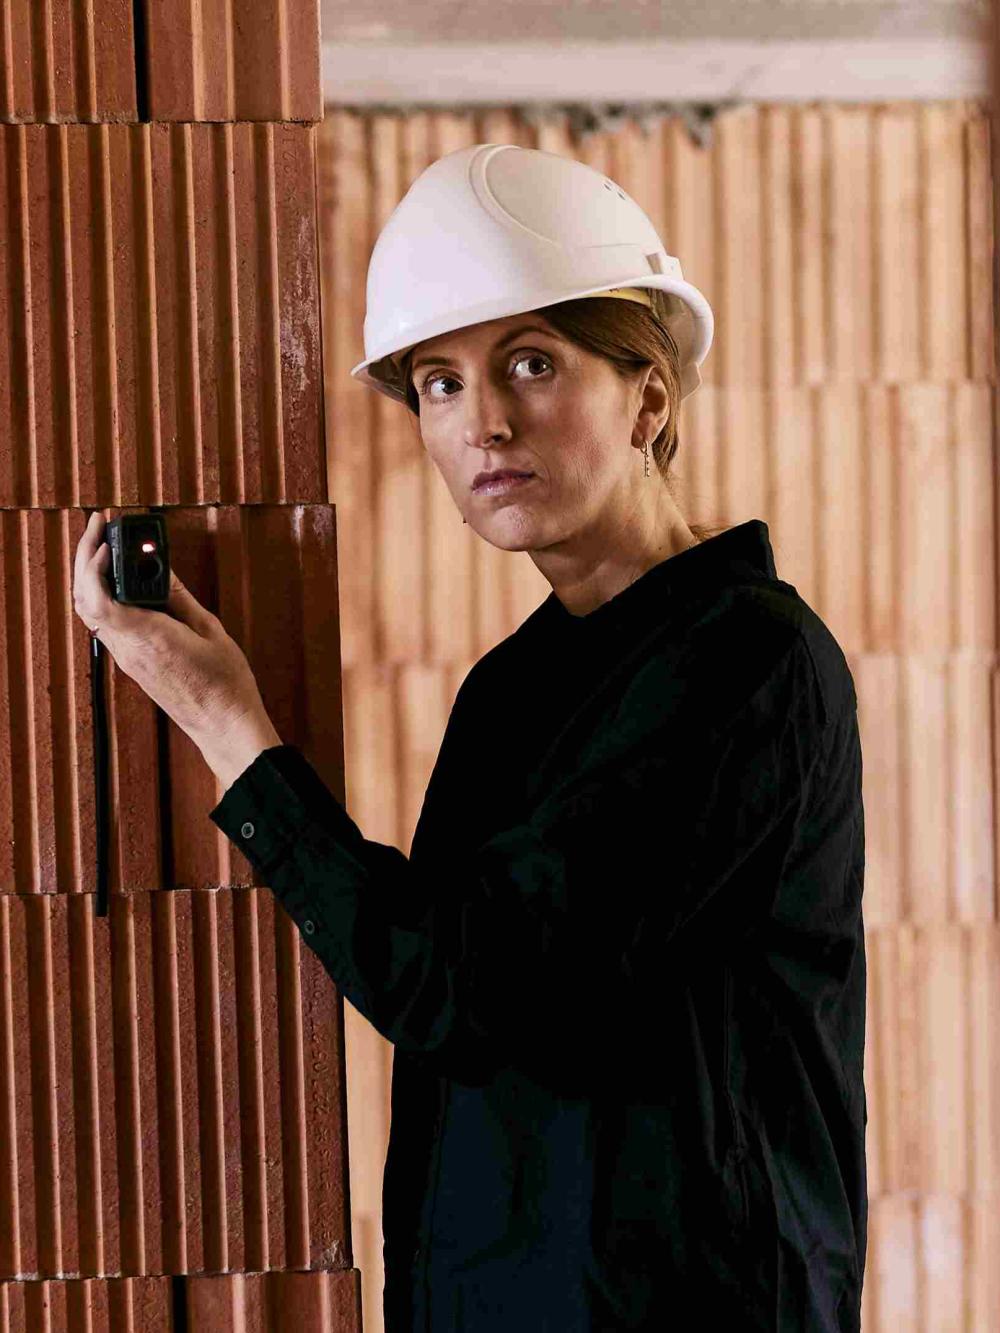 Frau auf Baustelle mit Helm misst etwas mit dem Laser aus.